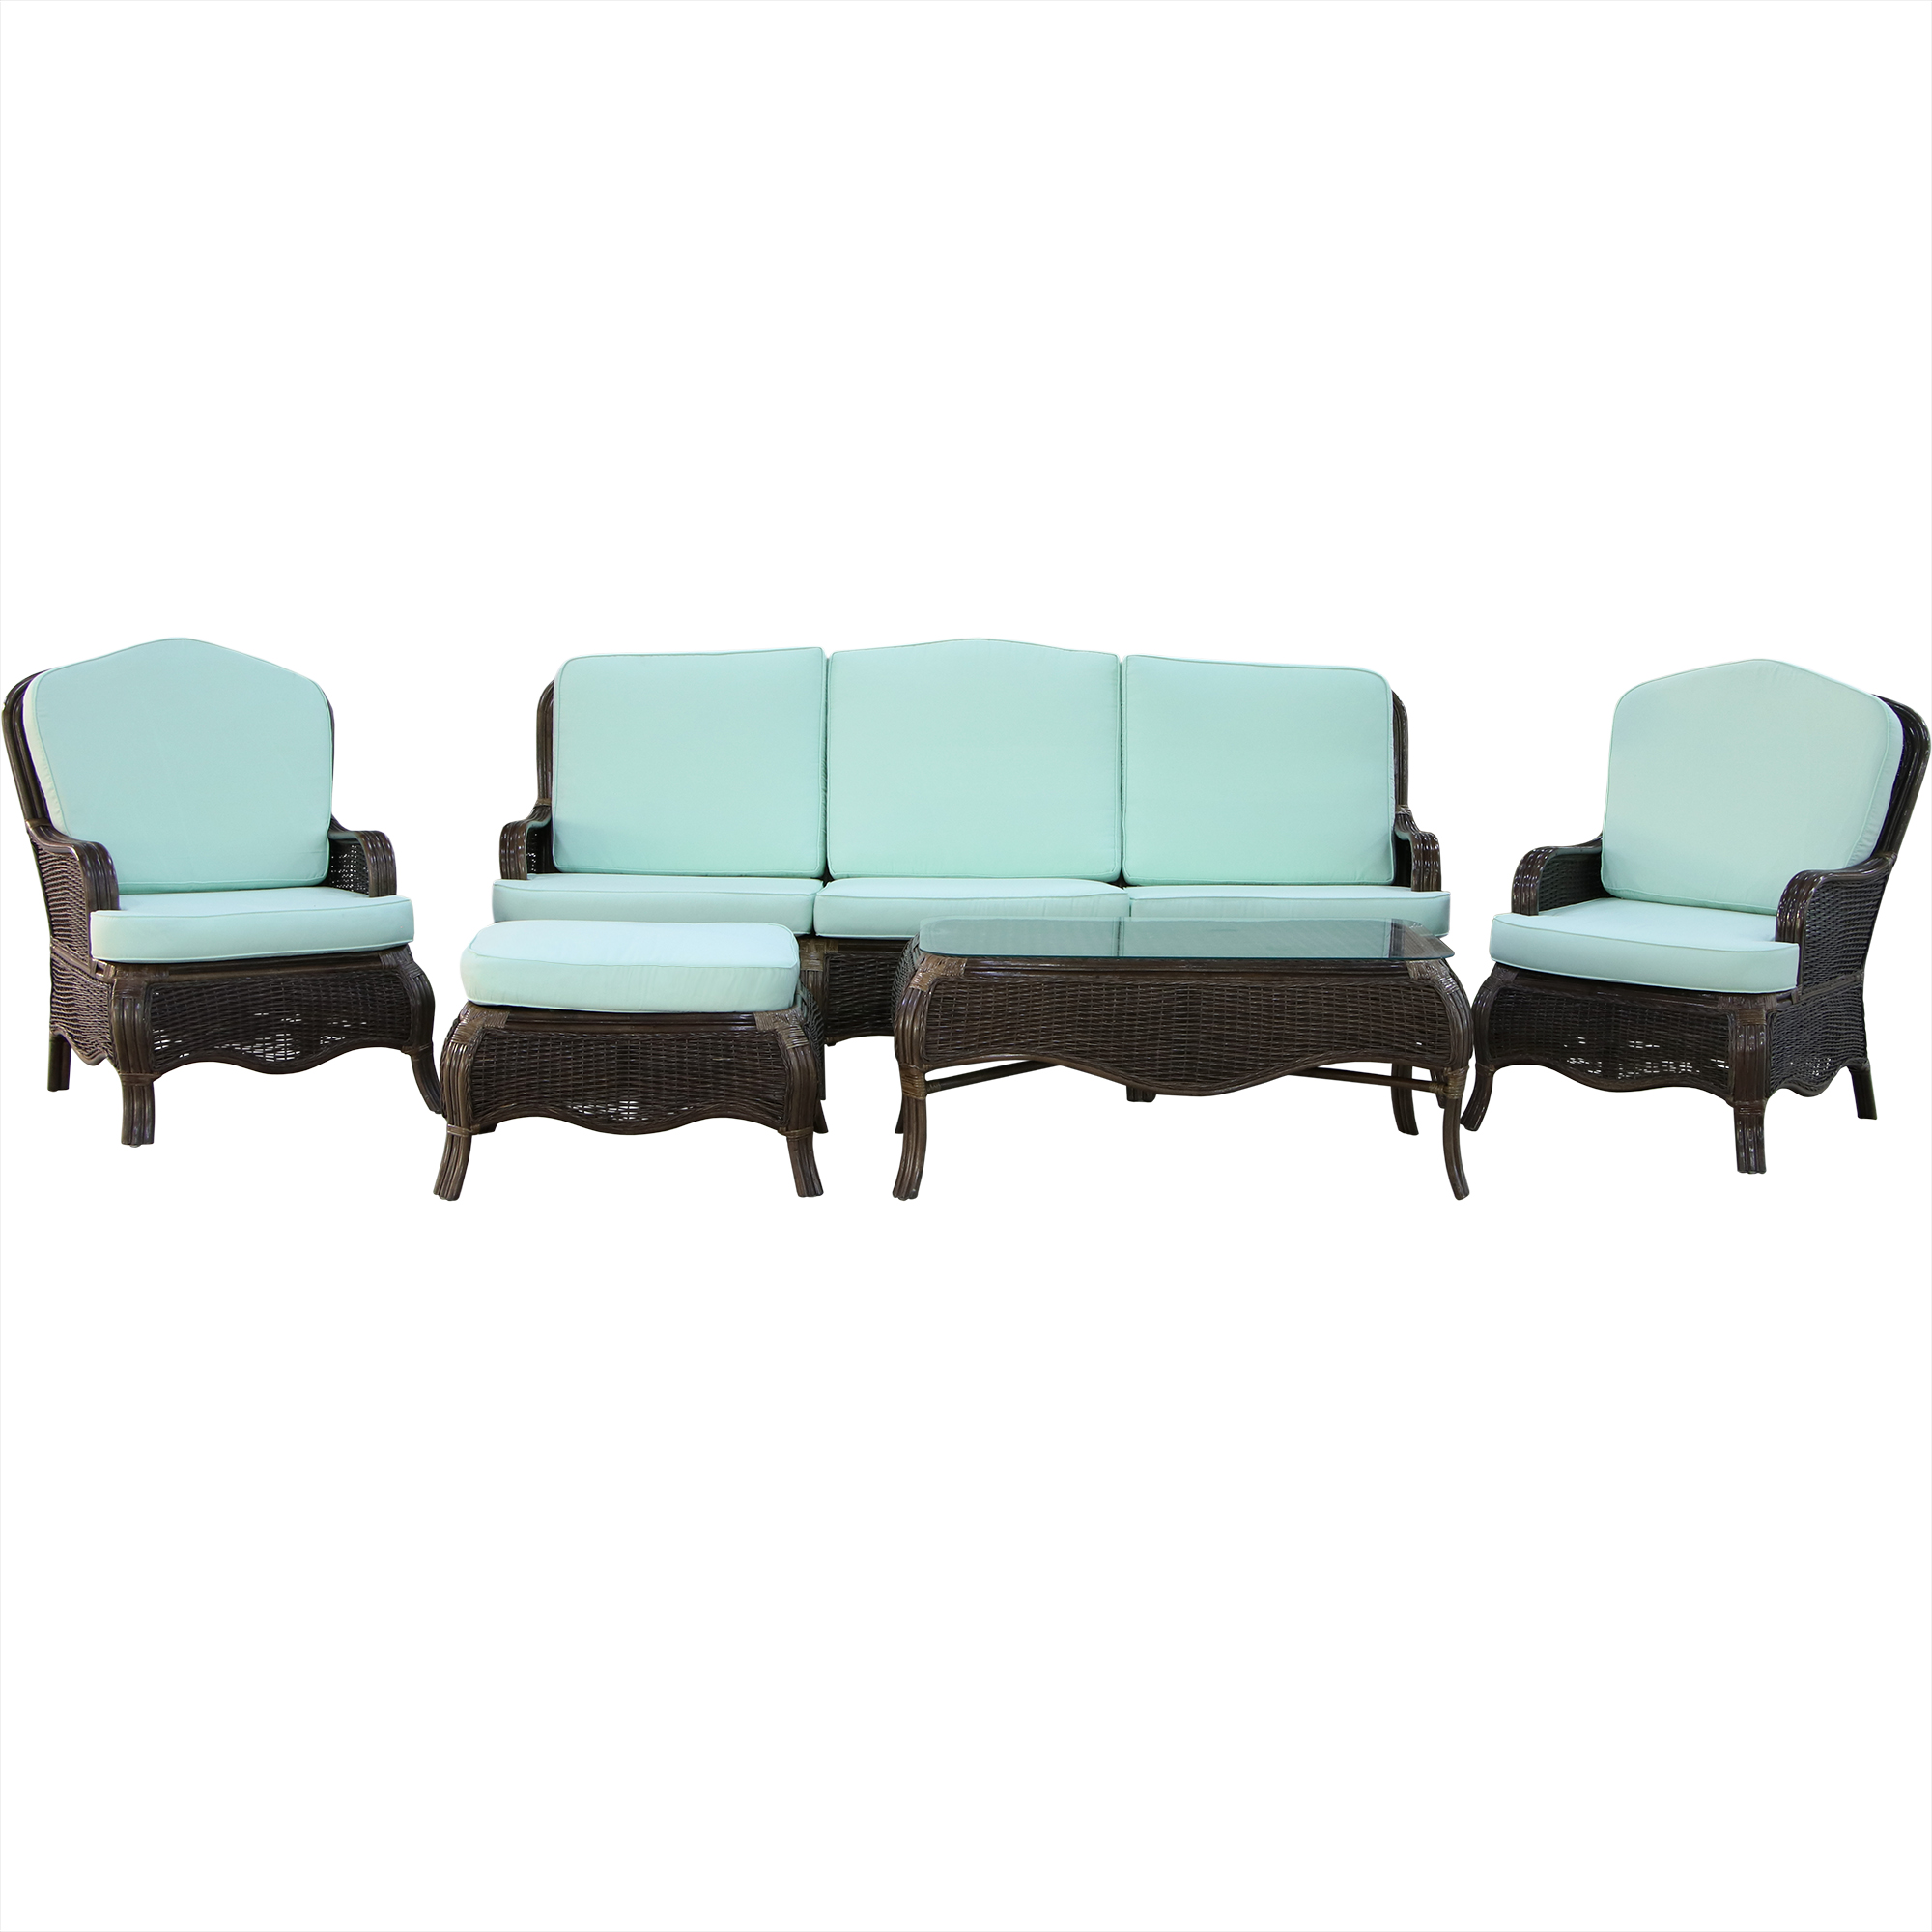 Комплект мебели Rattan grand manchester 5 предметов, цвет коричневый - фото 1